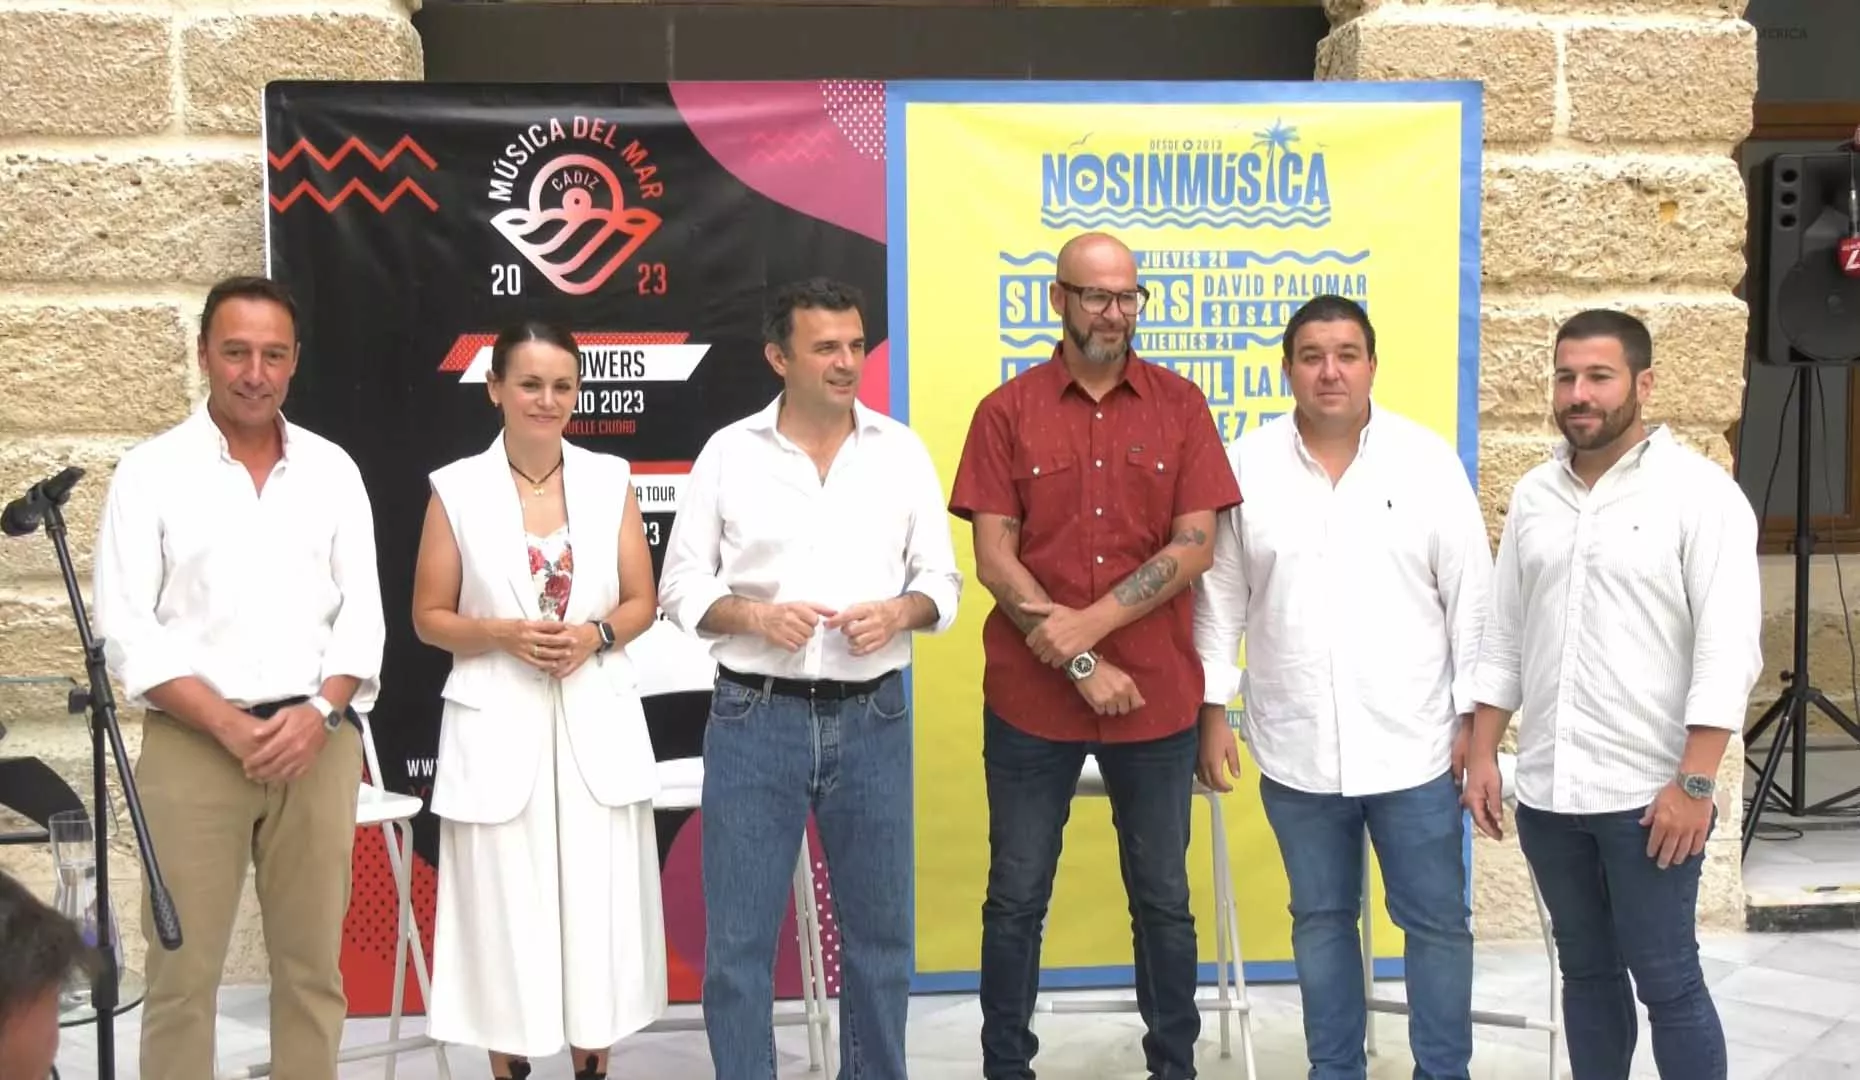 El alcalde de Cádiz, junto a sus tenientes de alcalde de Urbanismo y Turismo, y promotores de los Festivales durante la presentación de los dos ciclos